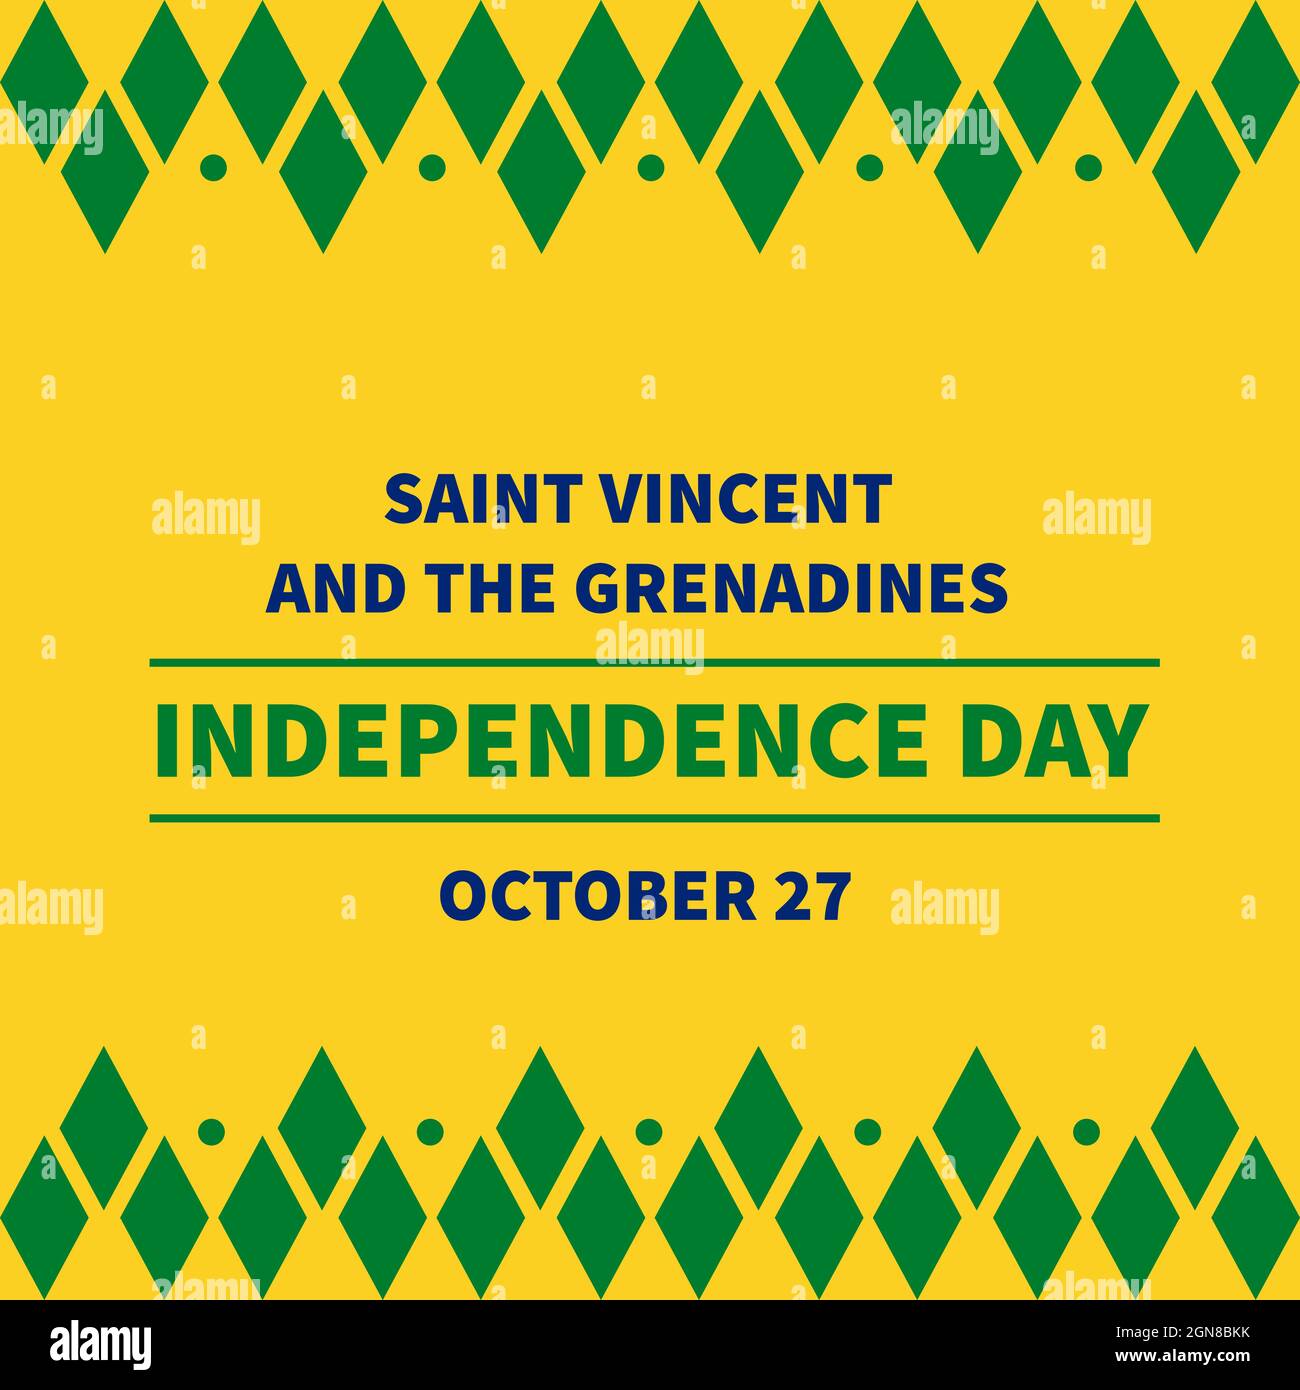 Cartel tipográfico del Día de la Independencia de San Vicente y las Granadinas. Fiesta nacional celebrada el 27 de octubre. Plantilla vectorial para banner, saludo c Ilustración del Vector